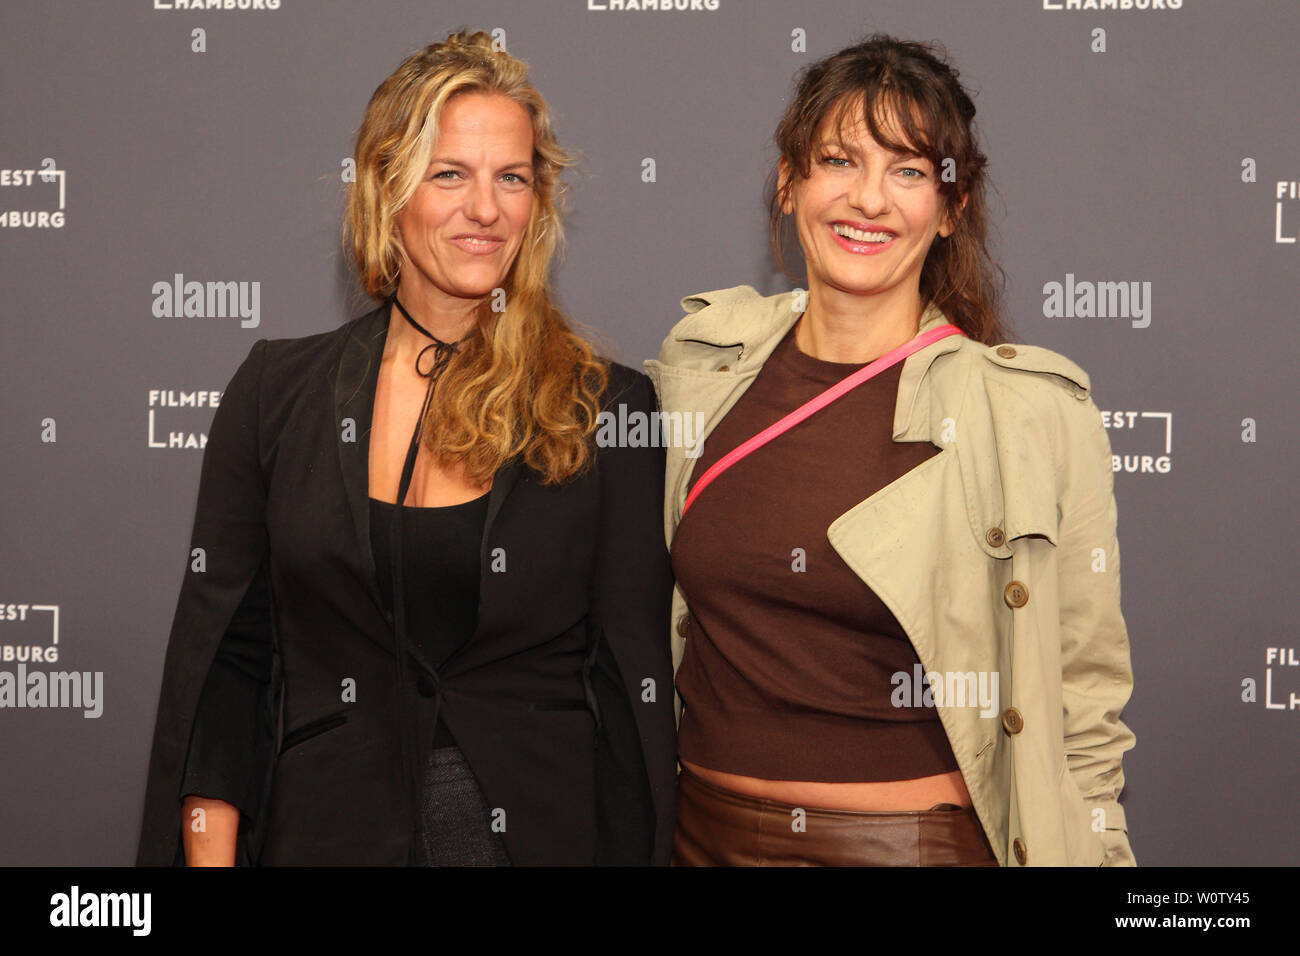 Janna und Catrin Striebeck, Filmfest Hamburg, 04.10.2018 Foto Stock